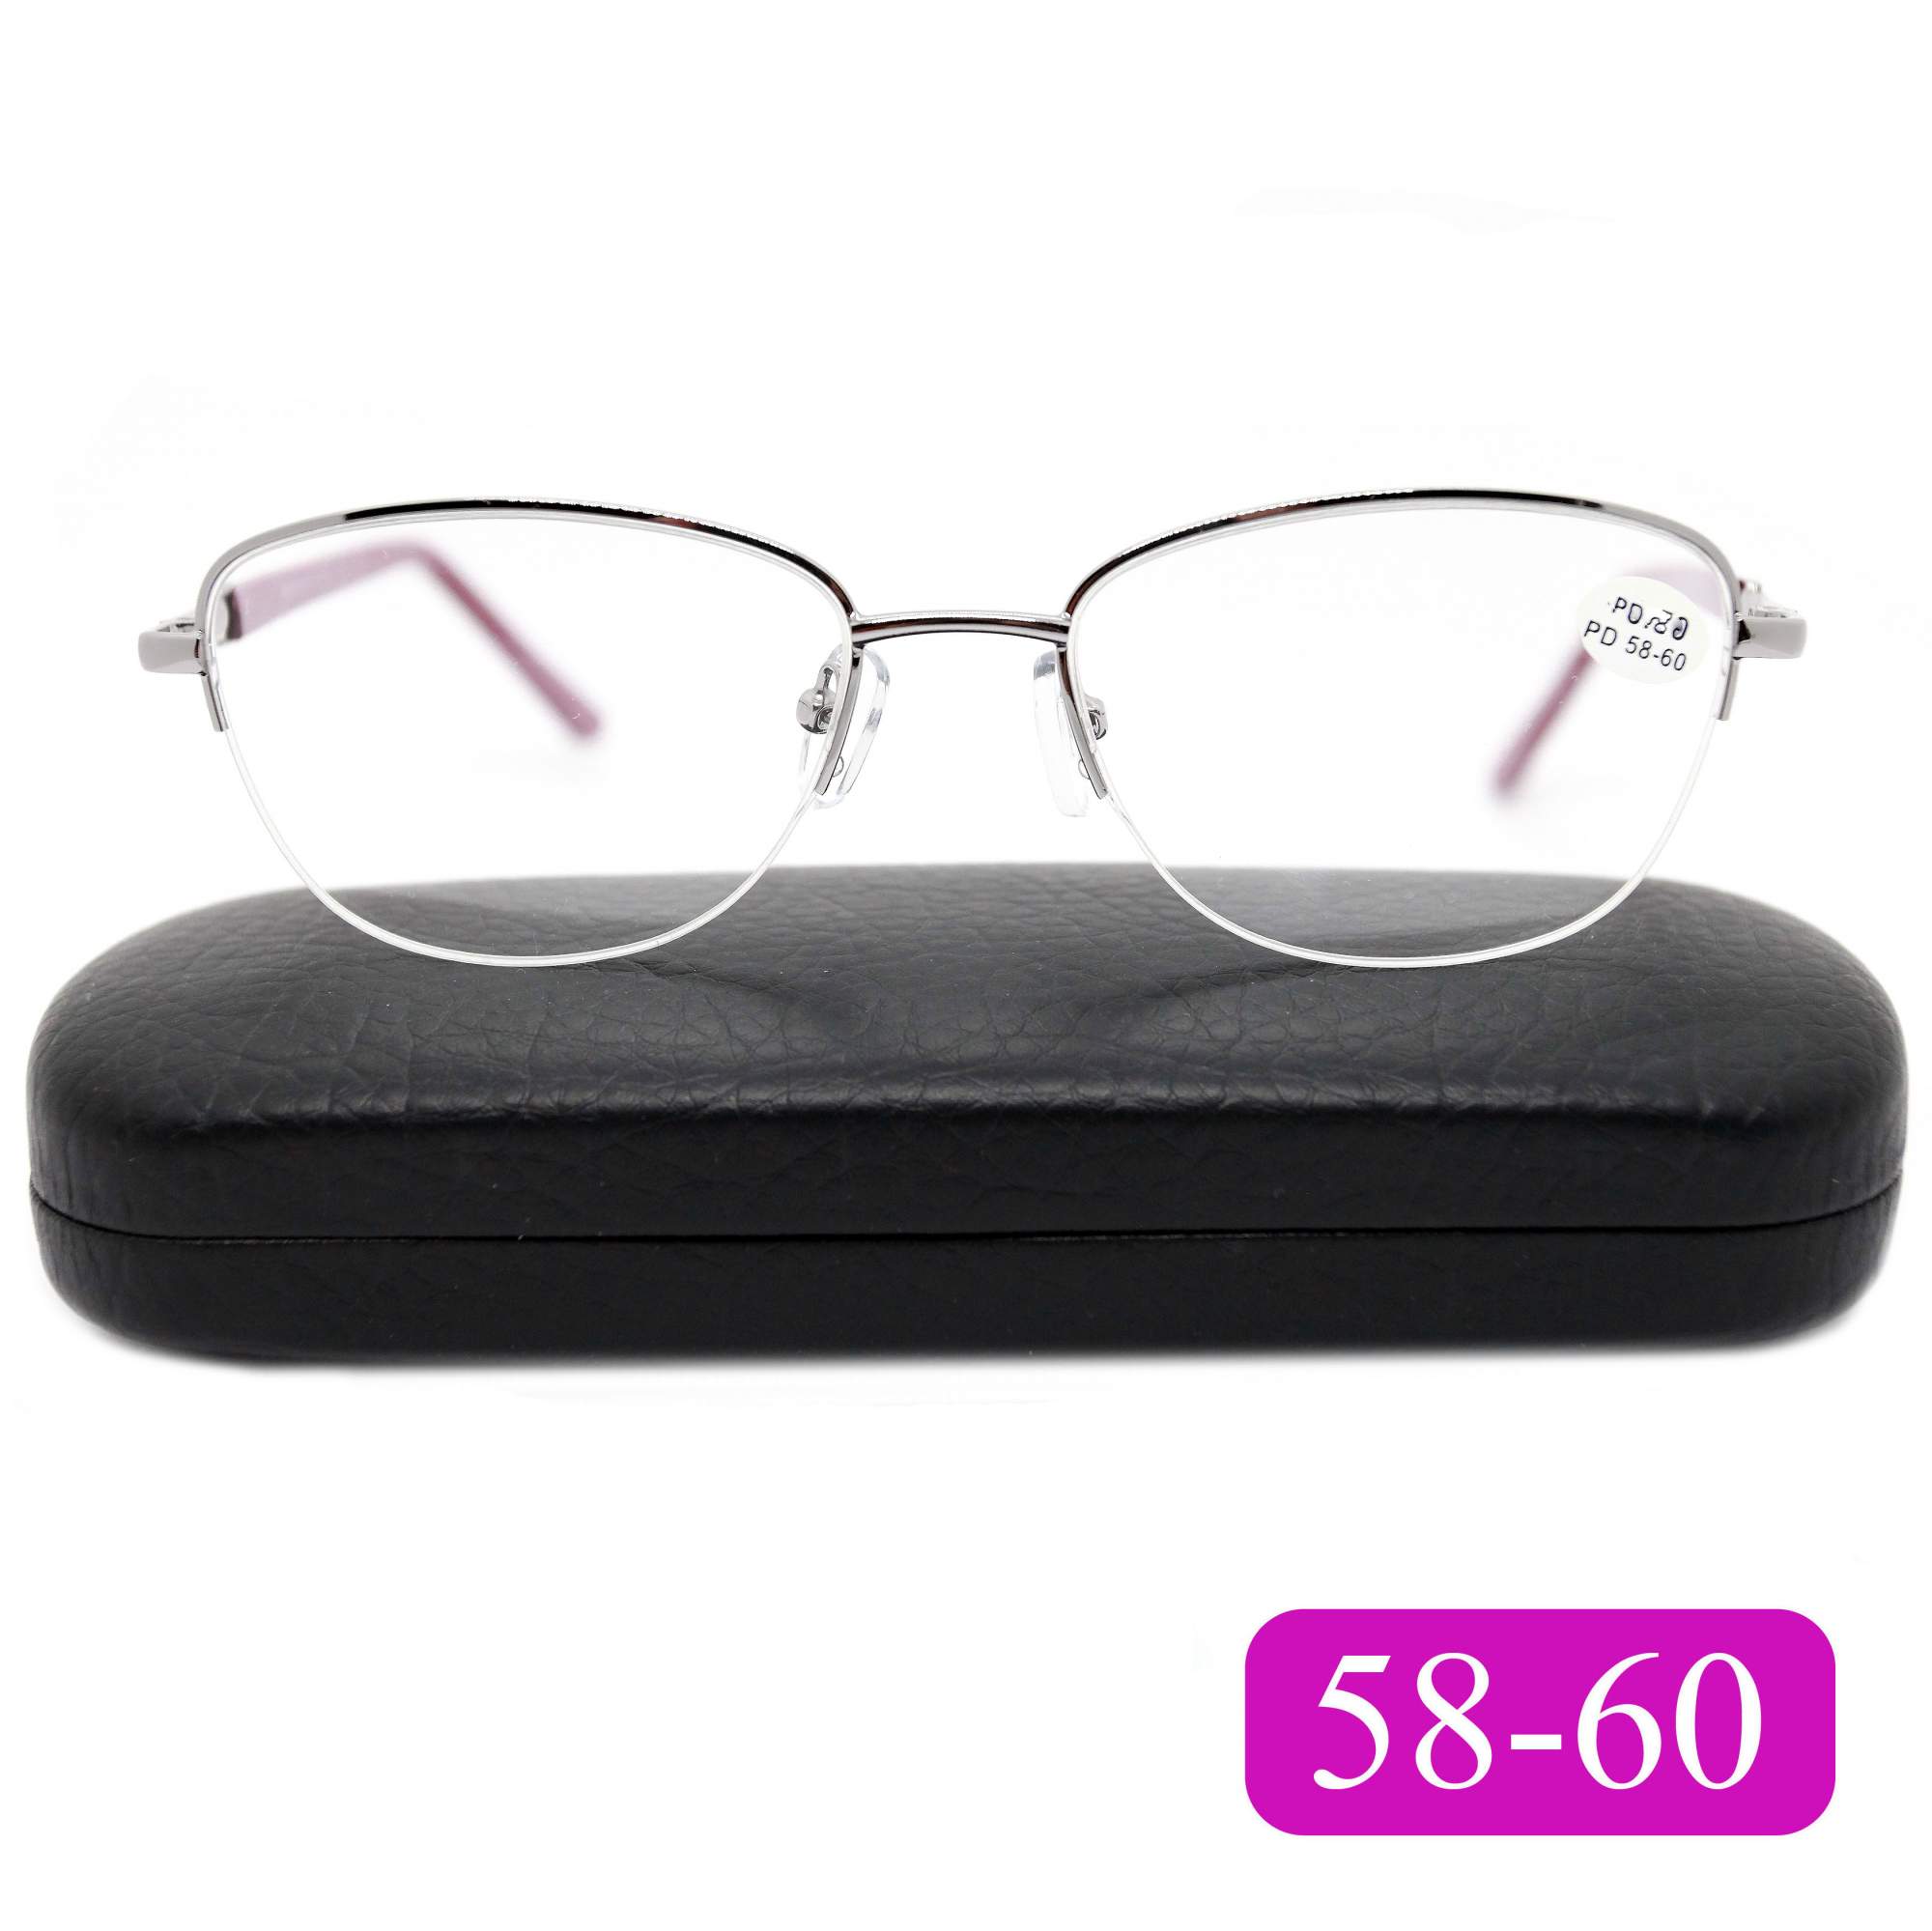 Готовые очки Fabia Monti 8920 +5.00, c футляром, цвет малиновый, РЦ 58-60